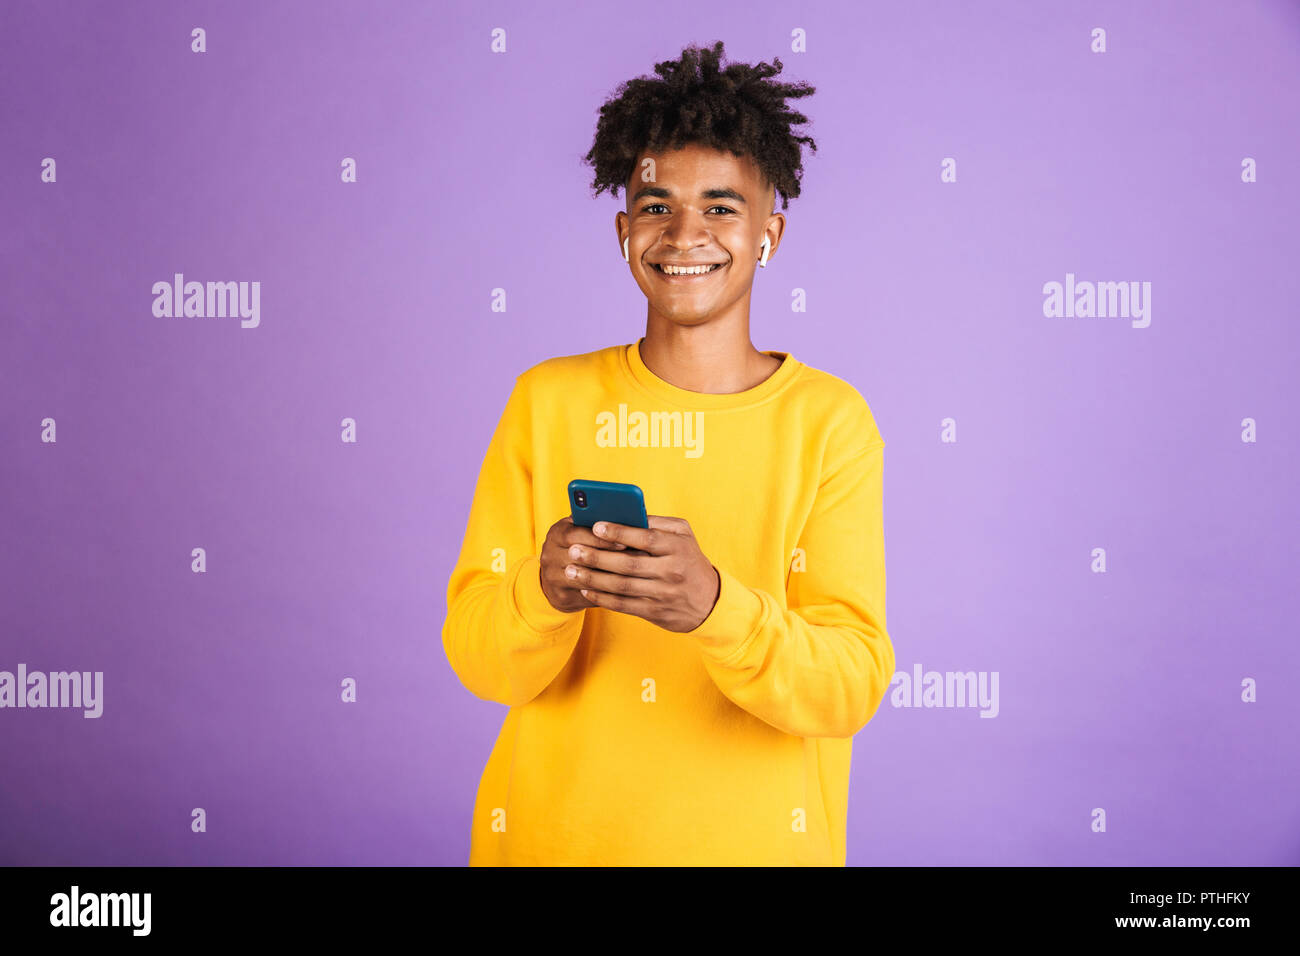 Portrait von jugendlich afrikanische amerikanische Mann und lächelnd Smartphone, bluetooth Kopfhörer über violett Hintergrund isoliert Stockfoto